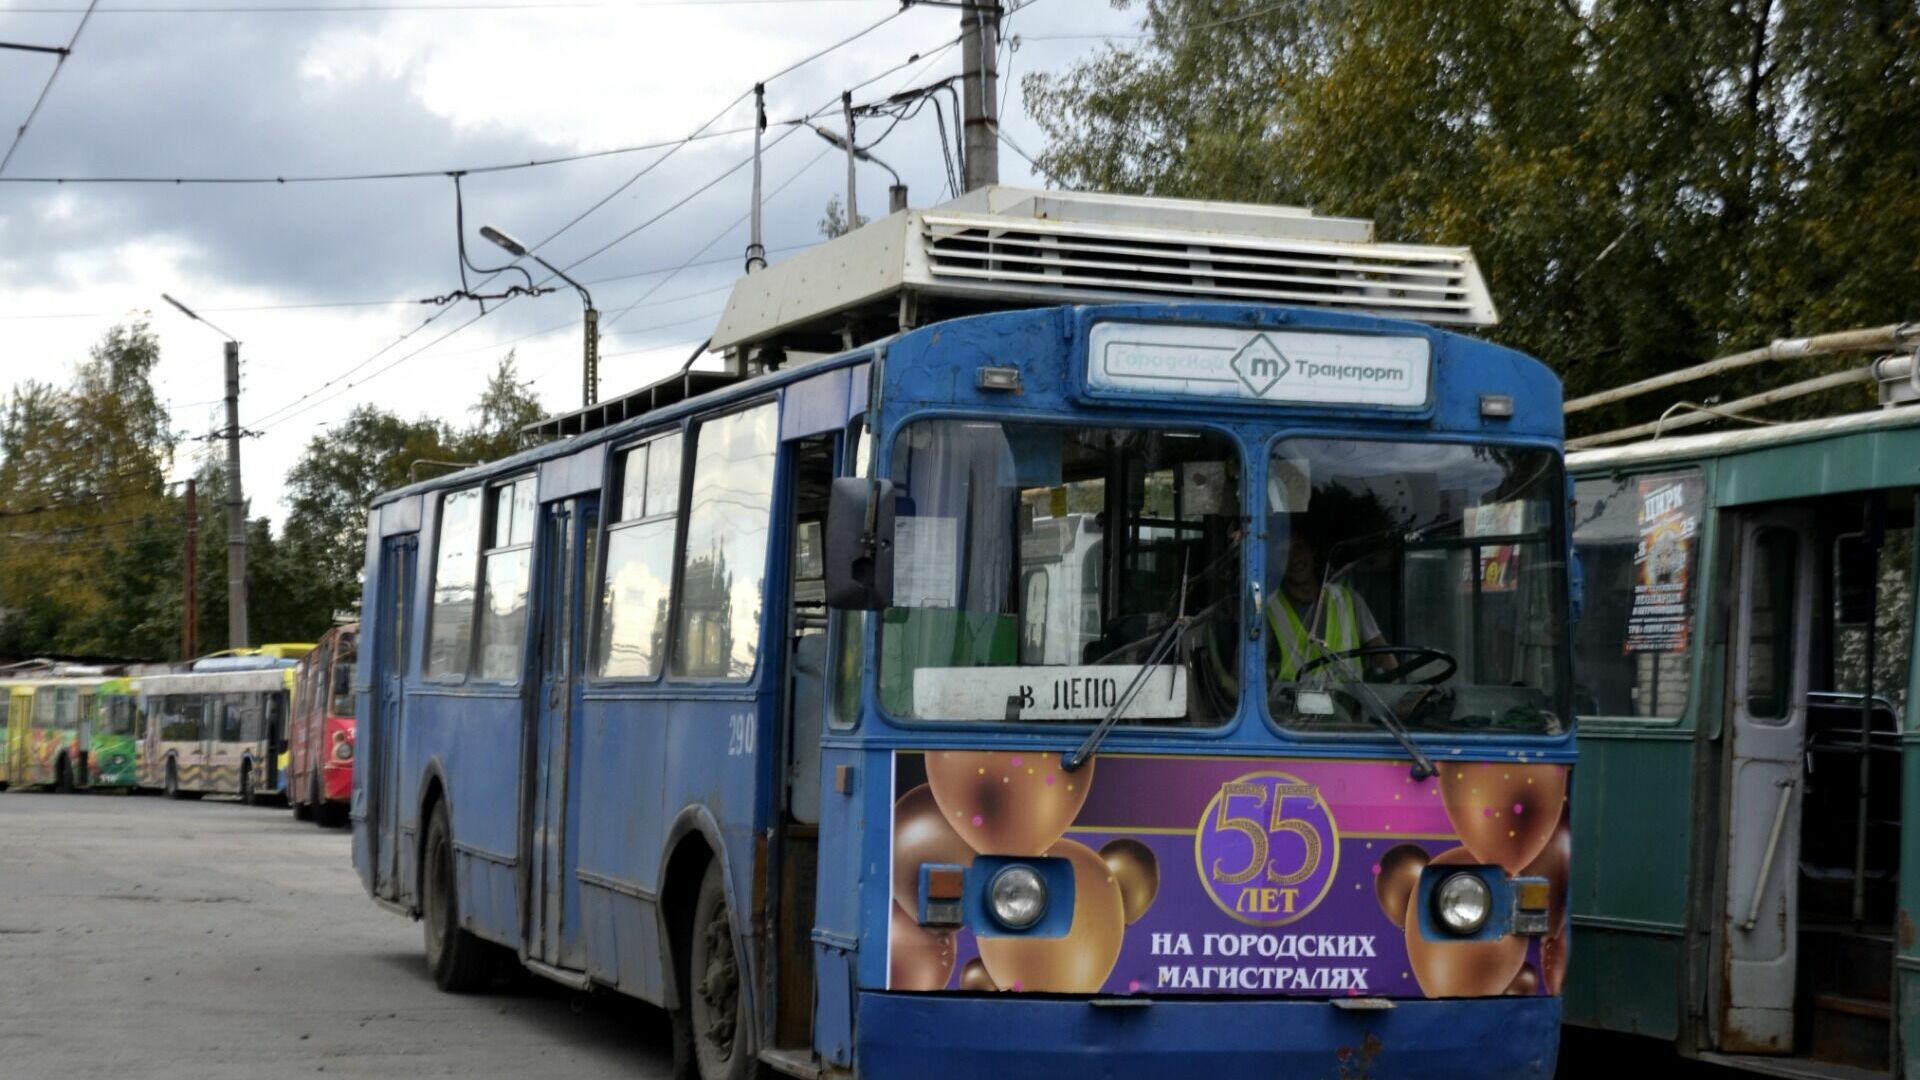 Стоимость проезда в троллейбусах Петрозаводска может увеличиться